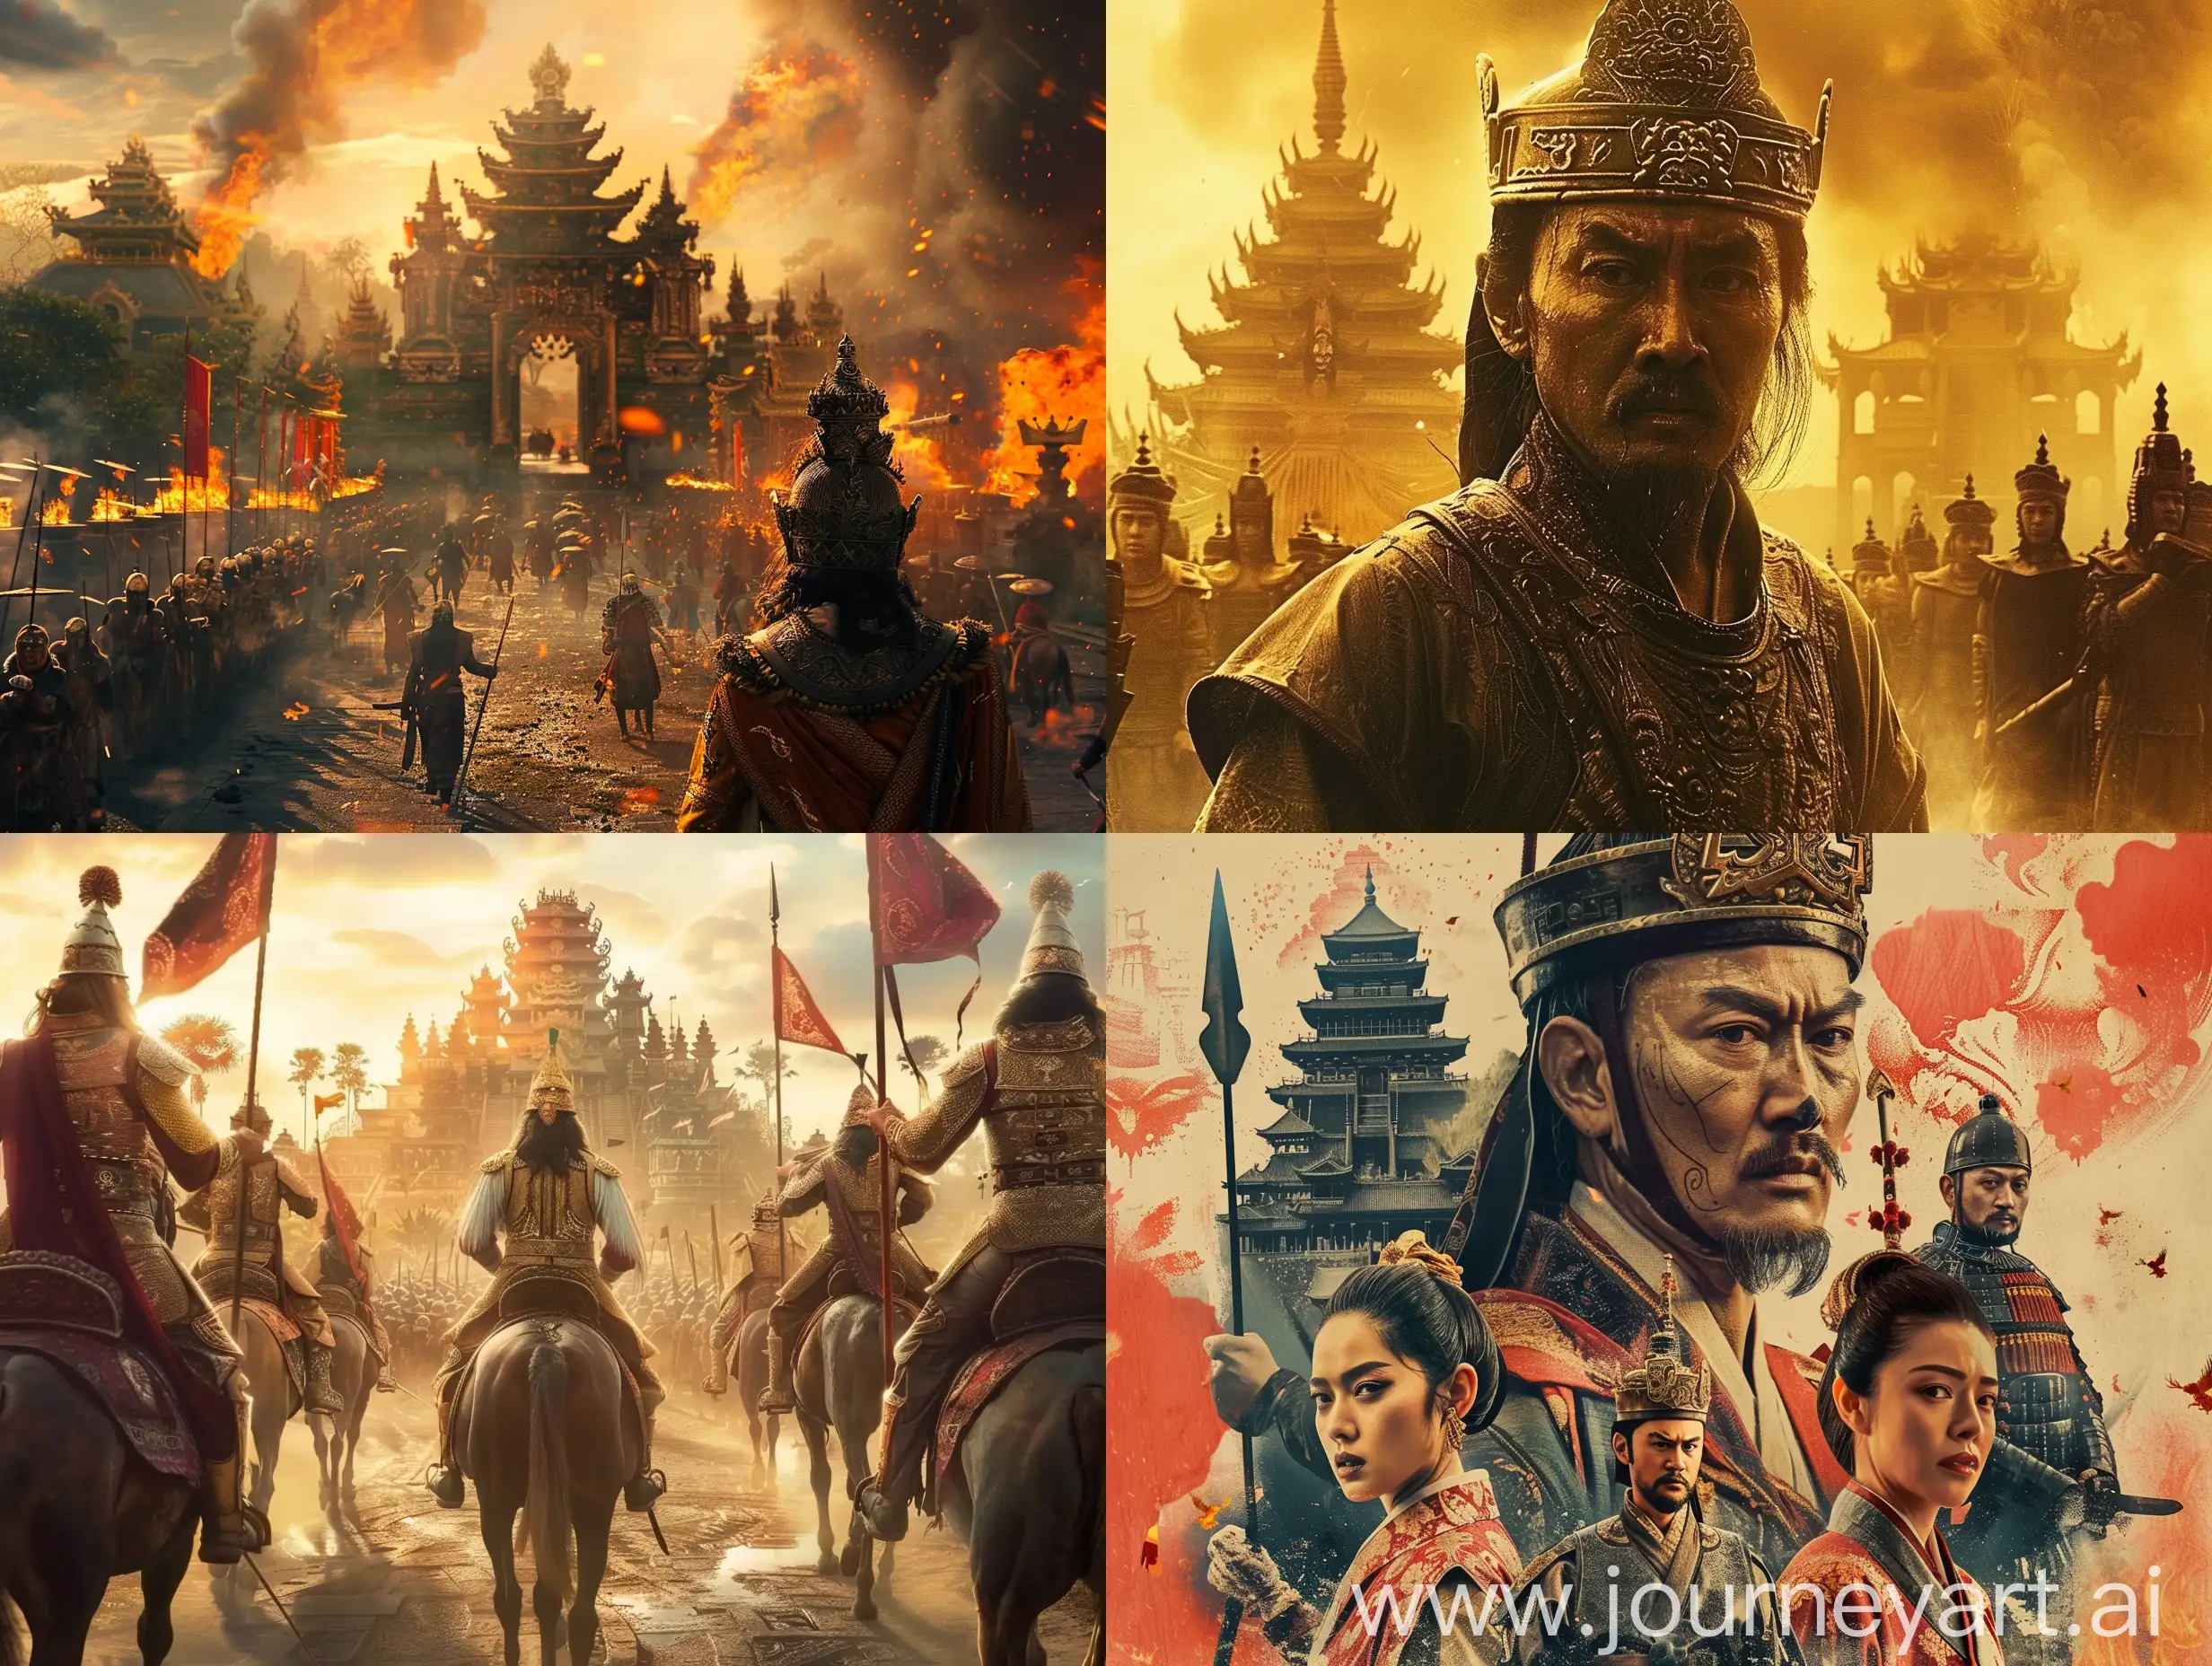 Epic-Movie-Poster-Majapahit-Kingdom-Ambiance